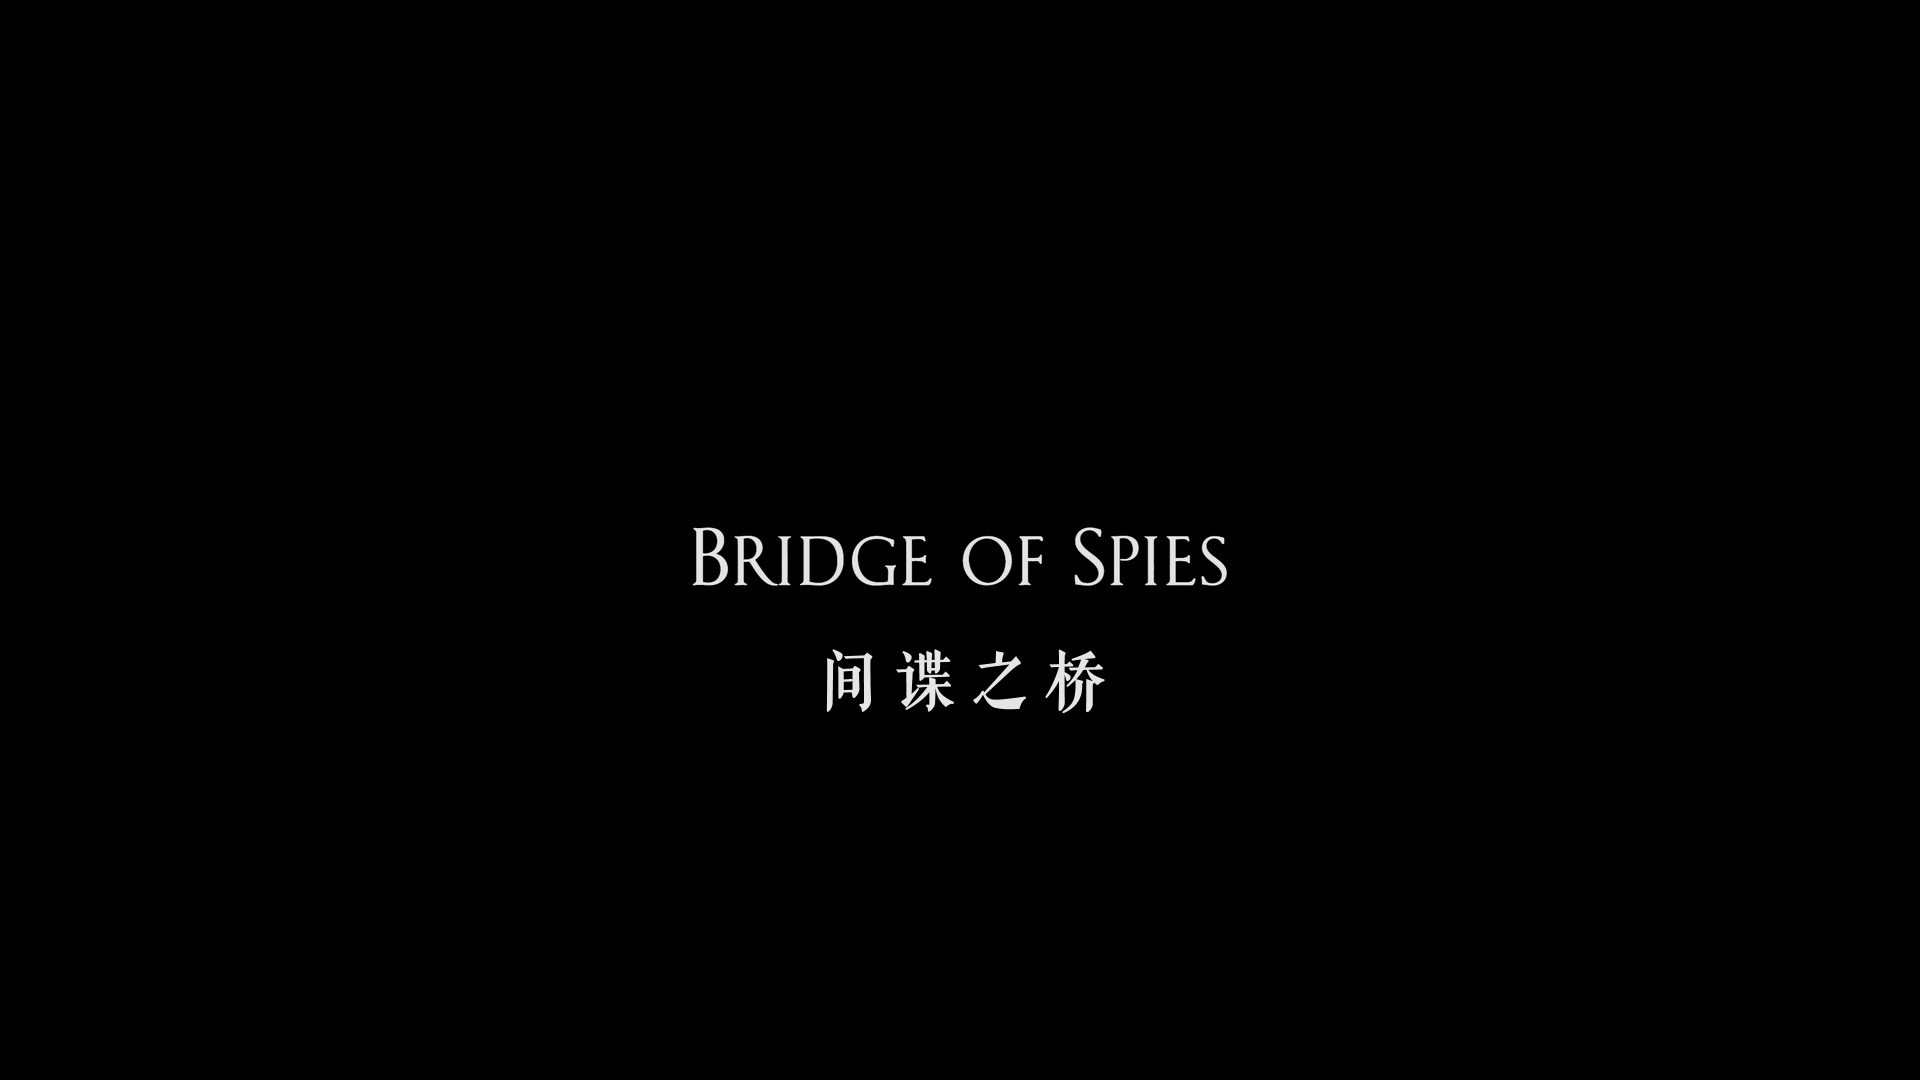 间谍之桥 [美版原盘DIY央视国配DTS对应简体特效中英特效字幕] Bridge of Spies 2015 US Blu-ray 1080p AVC DTS-HD MA 7 1-BHYS@OurBits[47.62GB]-5.png